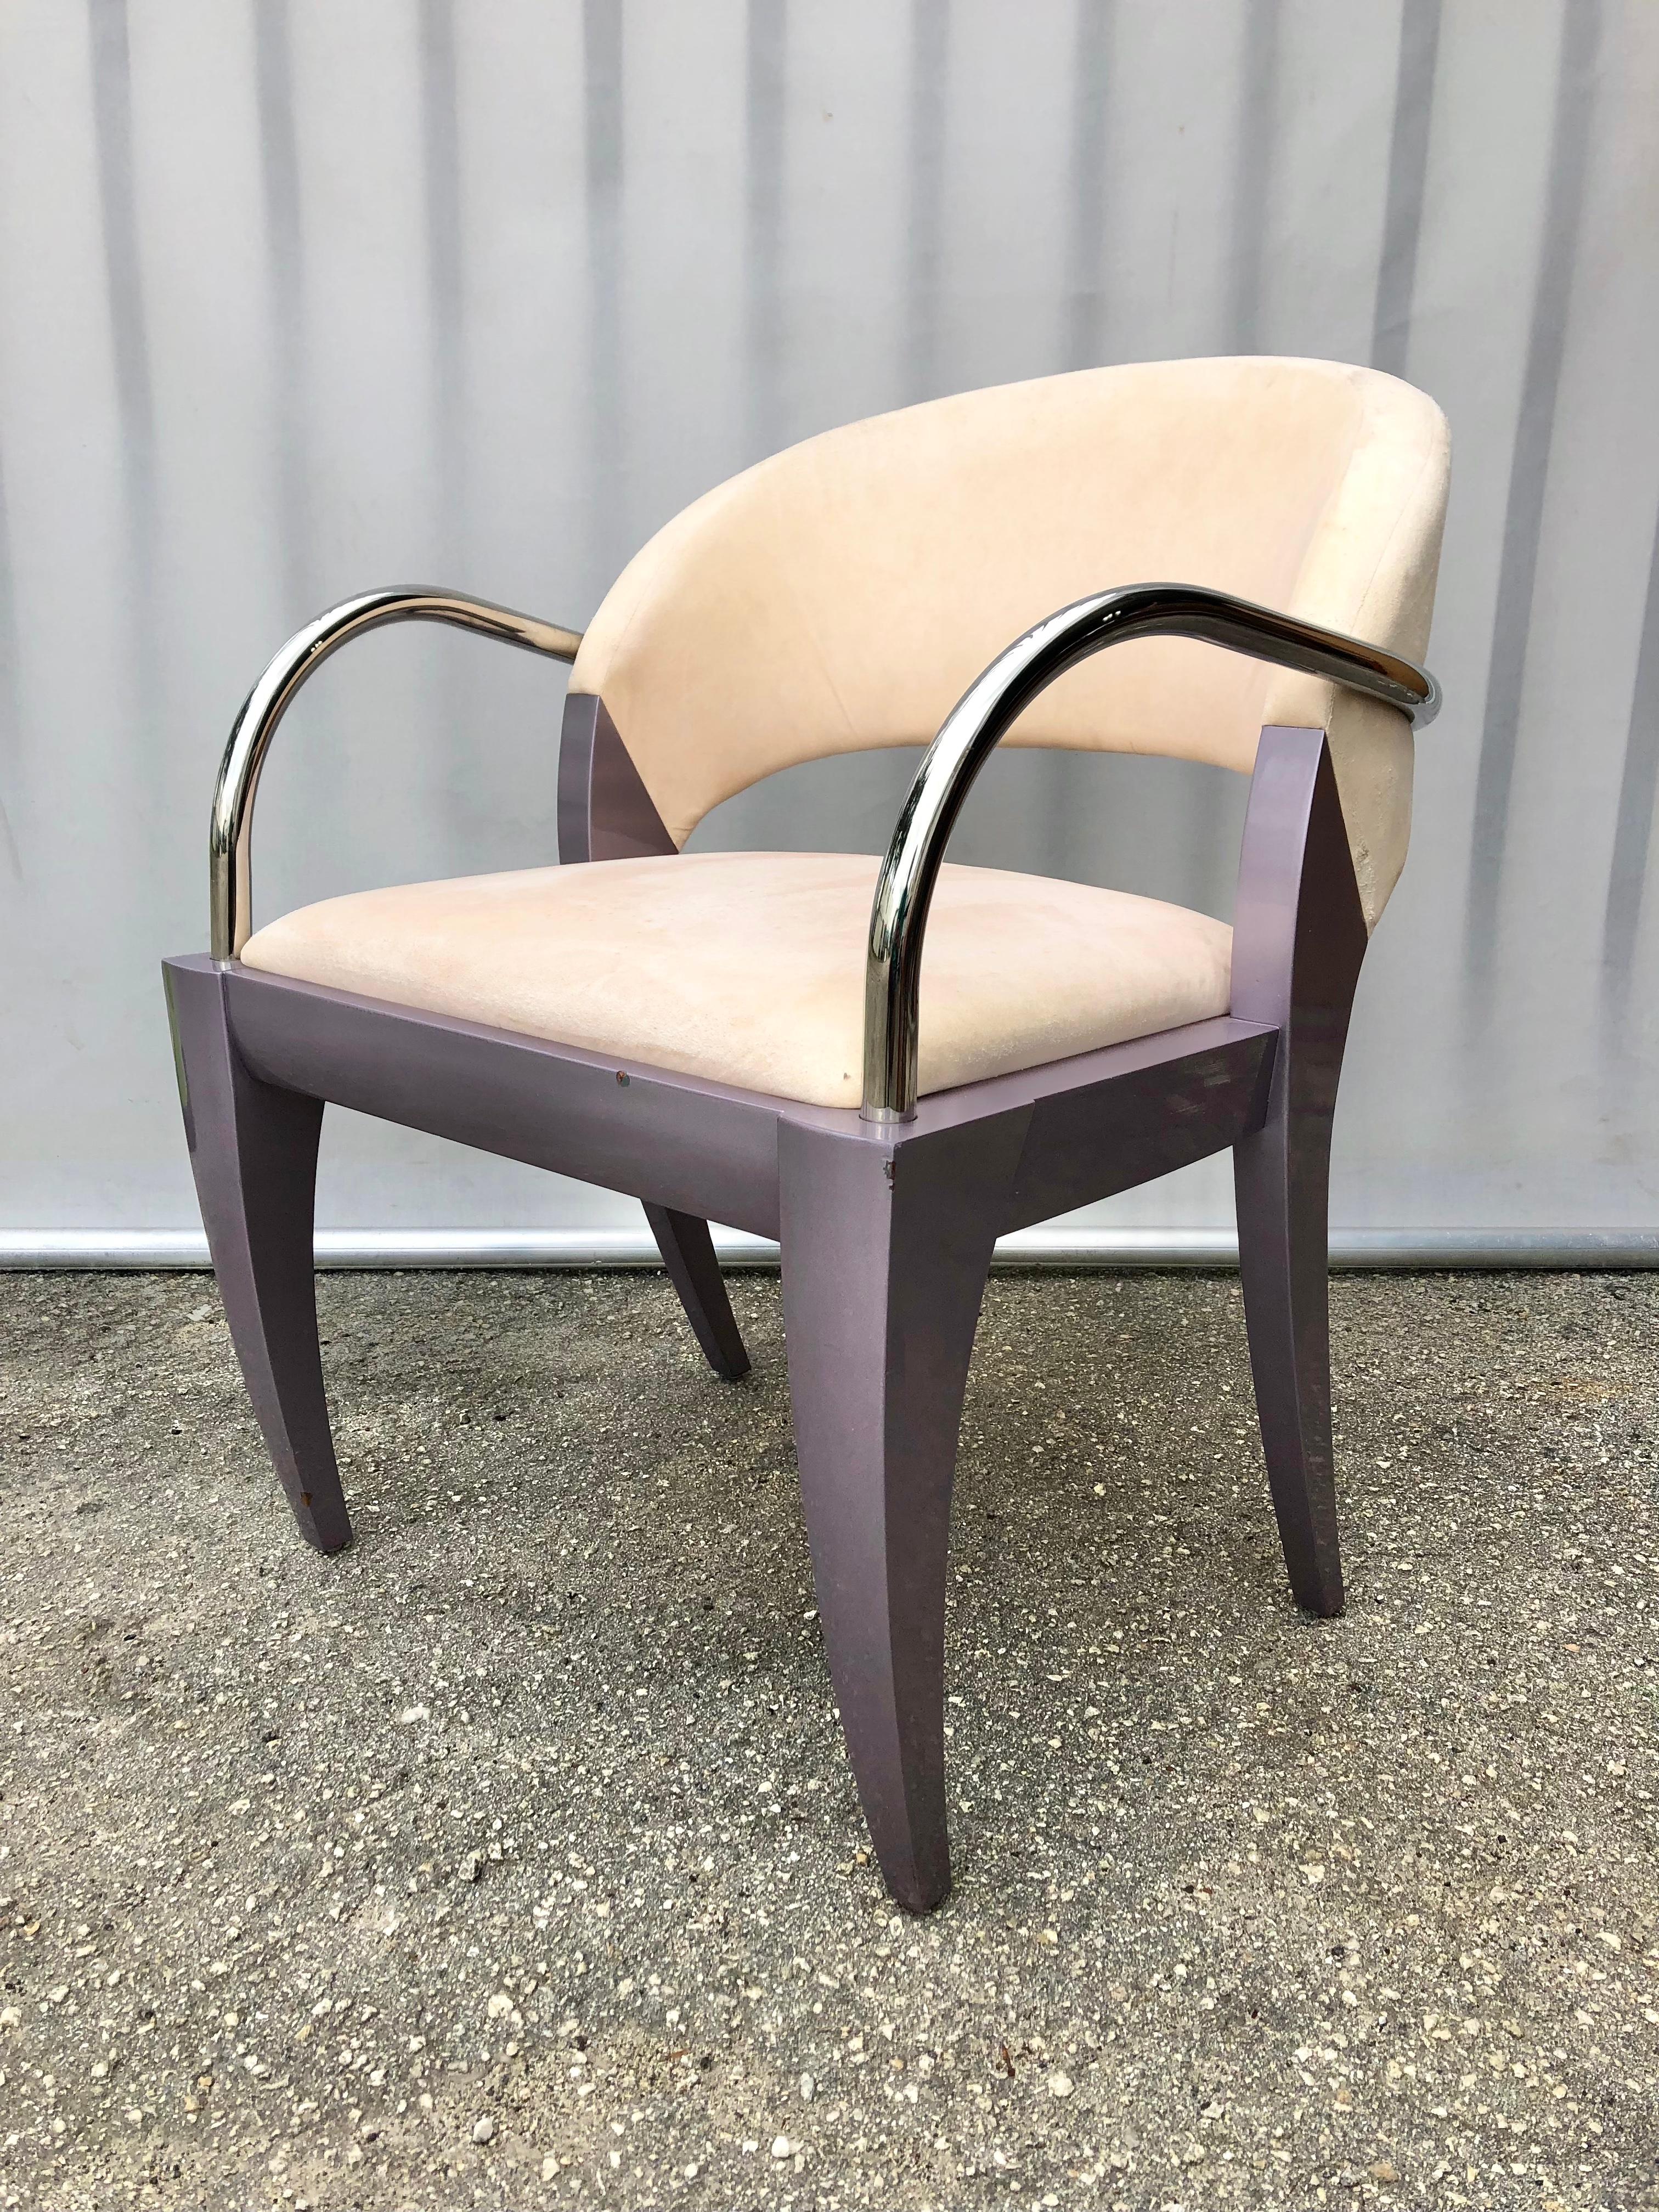 Chaise vintage postmoderne Iconique Willow conçue par Mitchell Pickard pour Brueton Industries, NY. Vers 1980. 
Il est doté de pieds en bois massif gracieusement courbés, d'une finition laquée brillante violet clair, d'accoudoirs tubulaires en